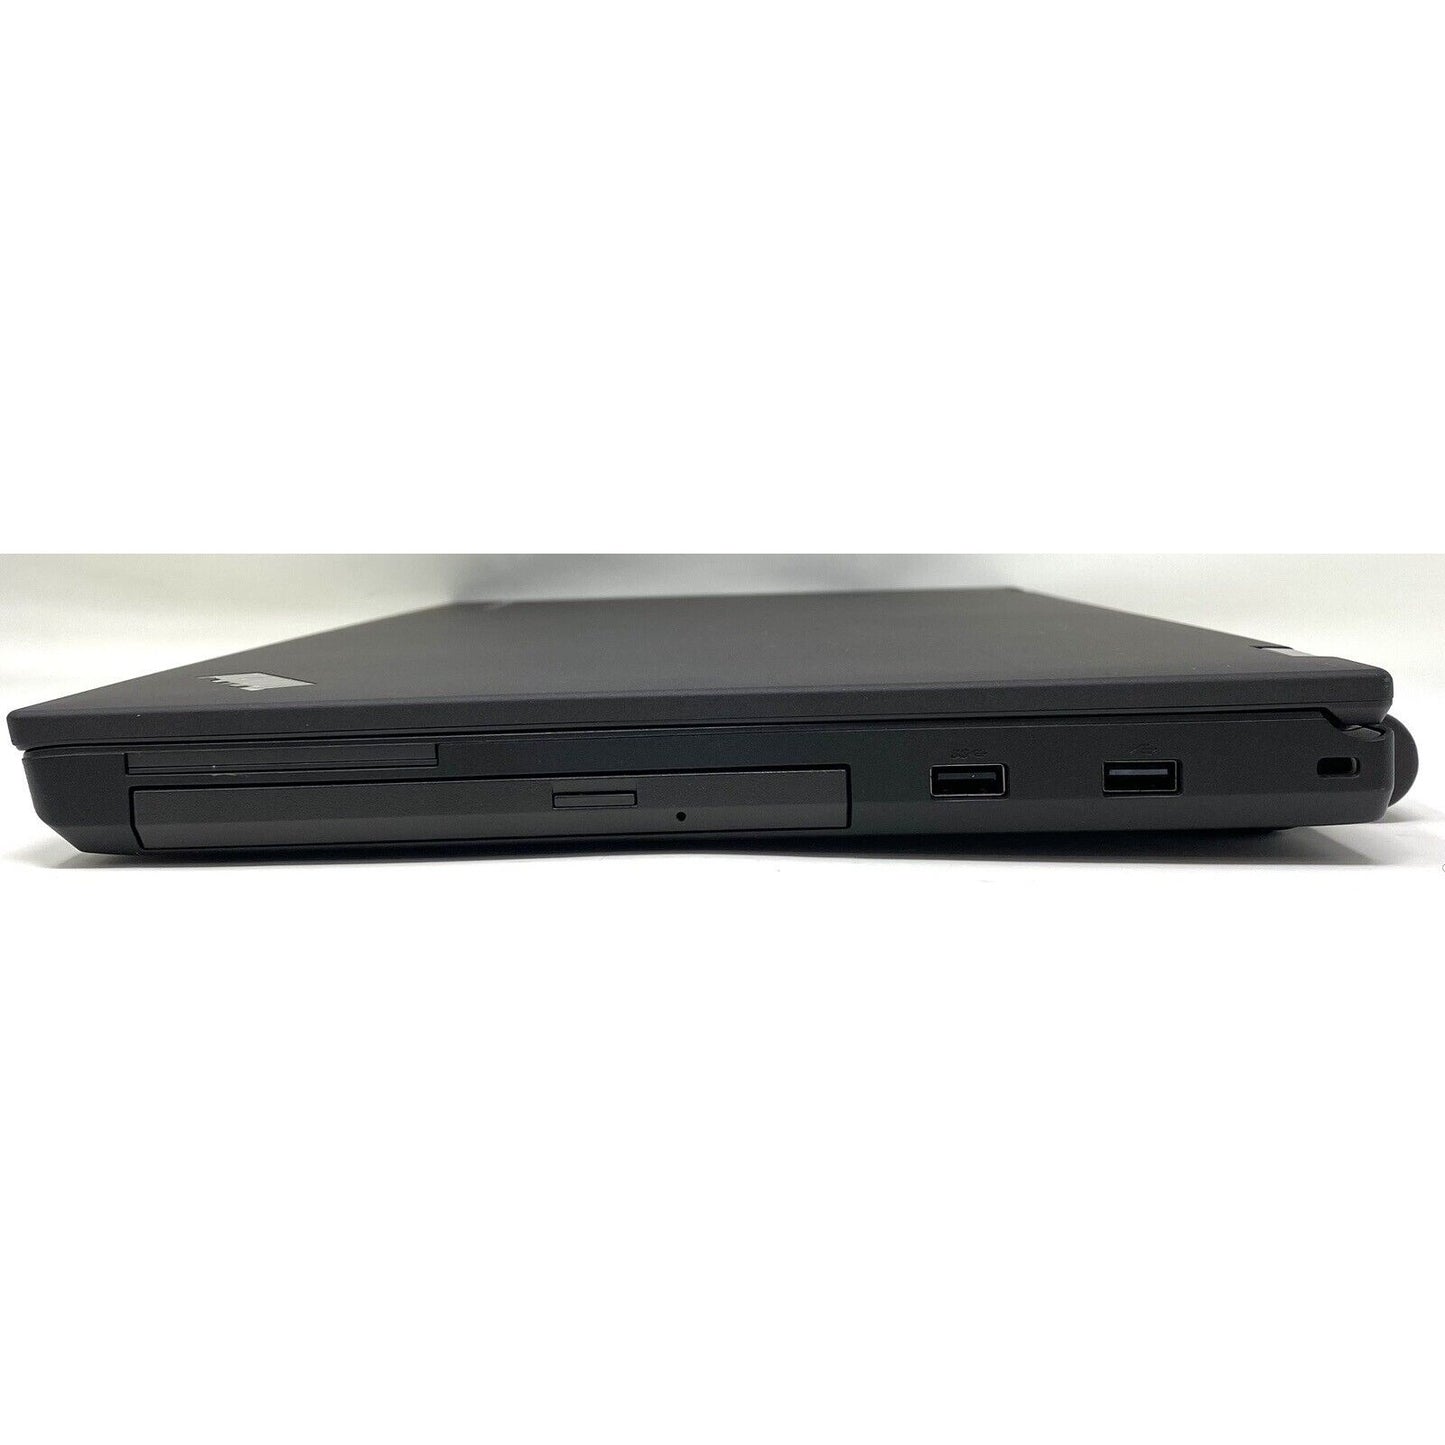 NO BLUETOOTH - Lenovo ThinkPad T540p 20BF-S0UD01 Laptop 16GB RAM 180GB 2.5” SSD